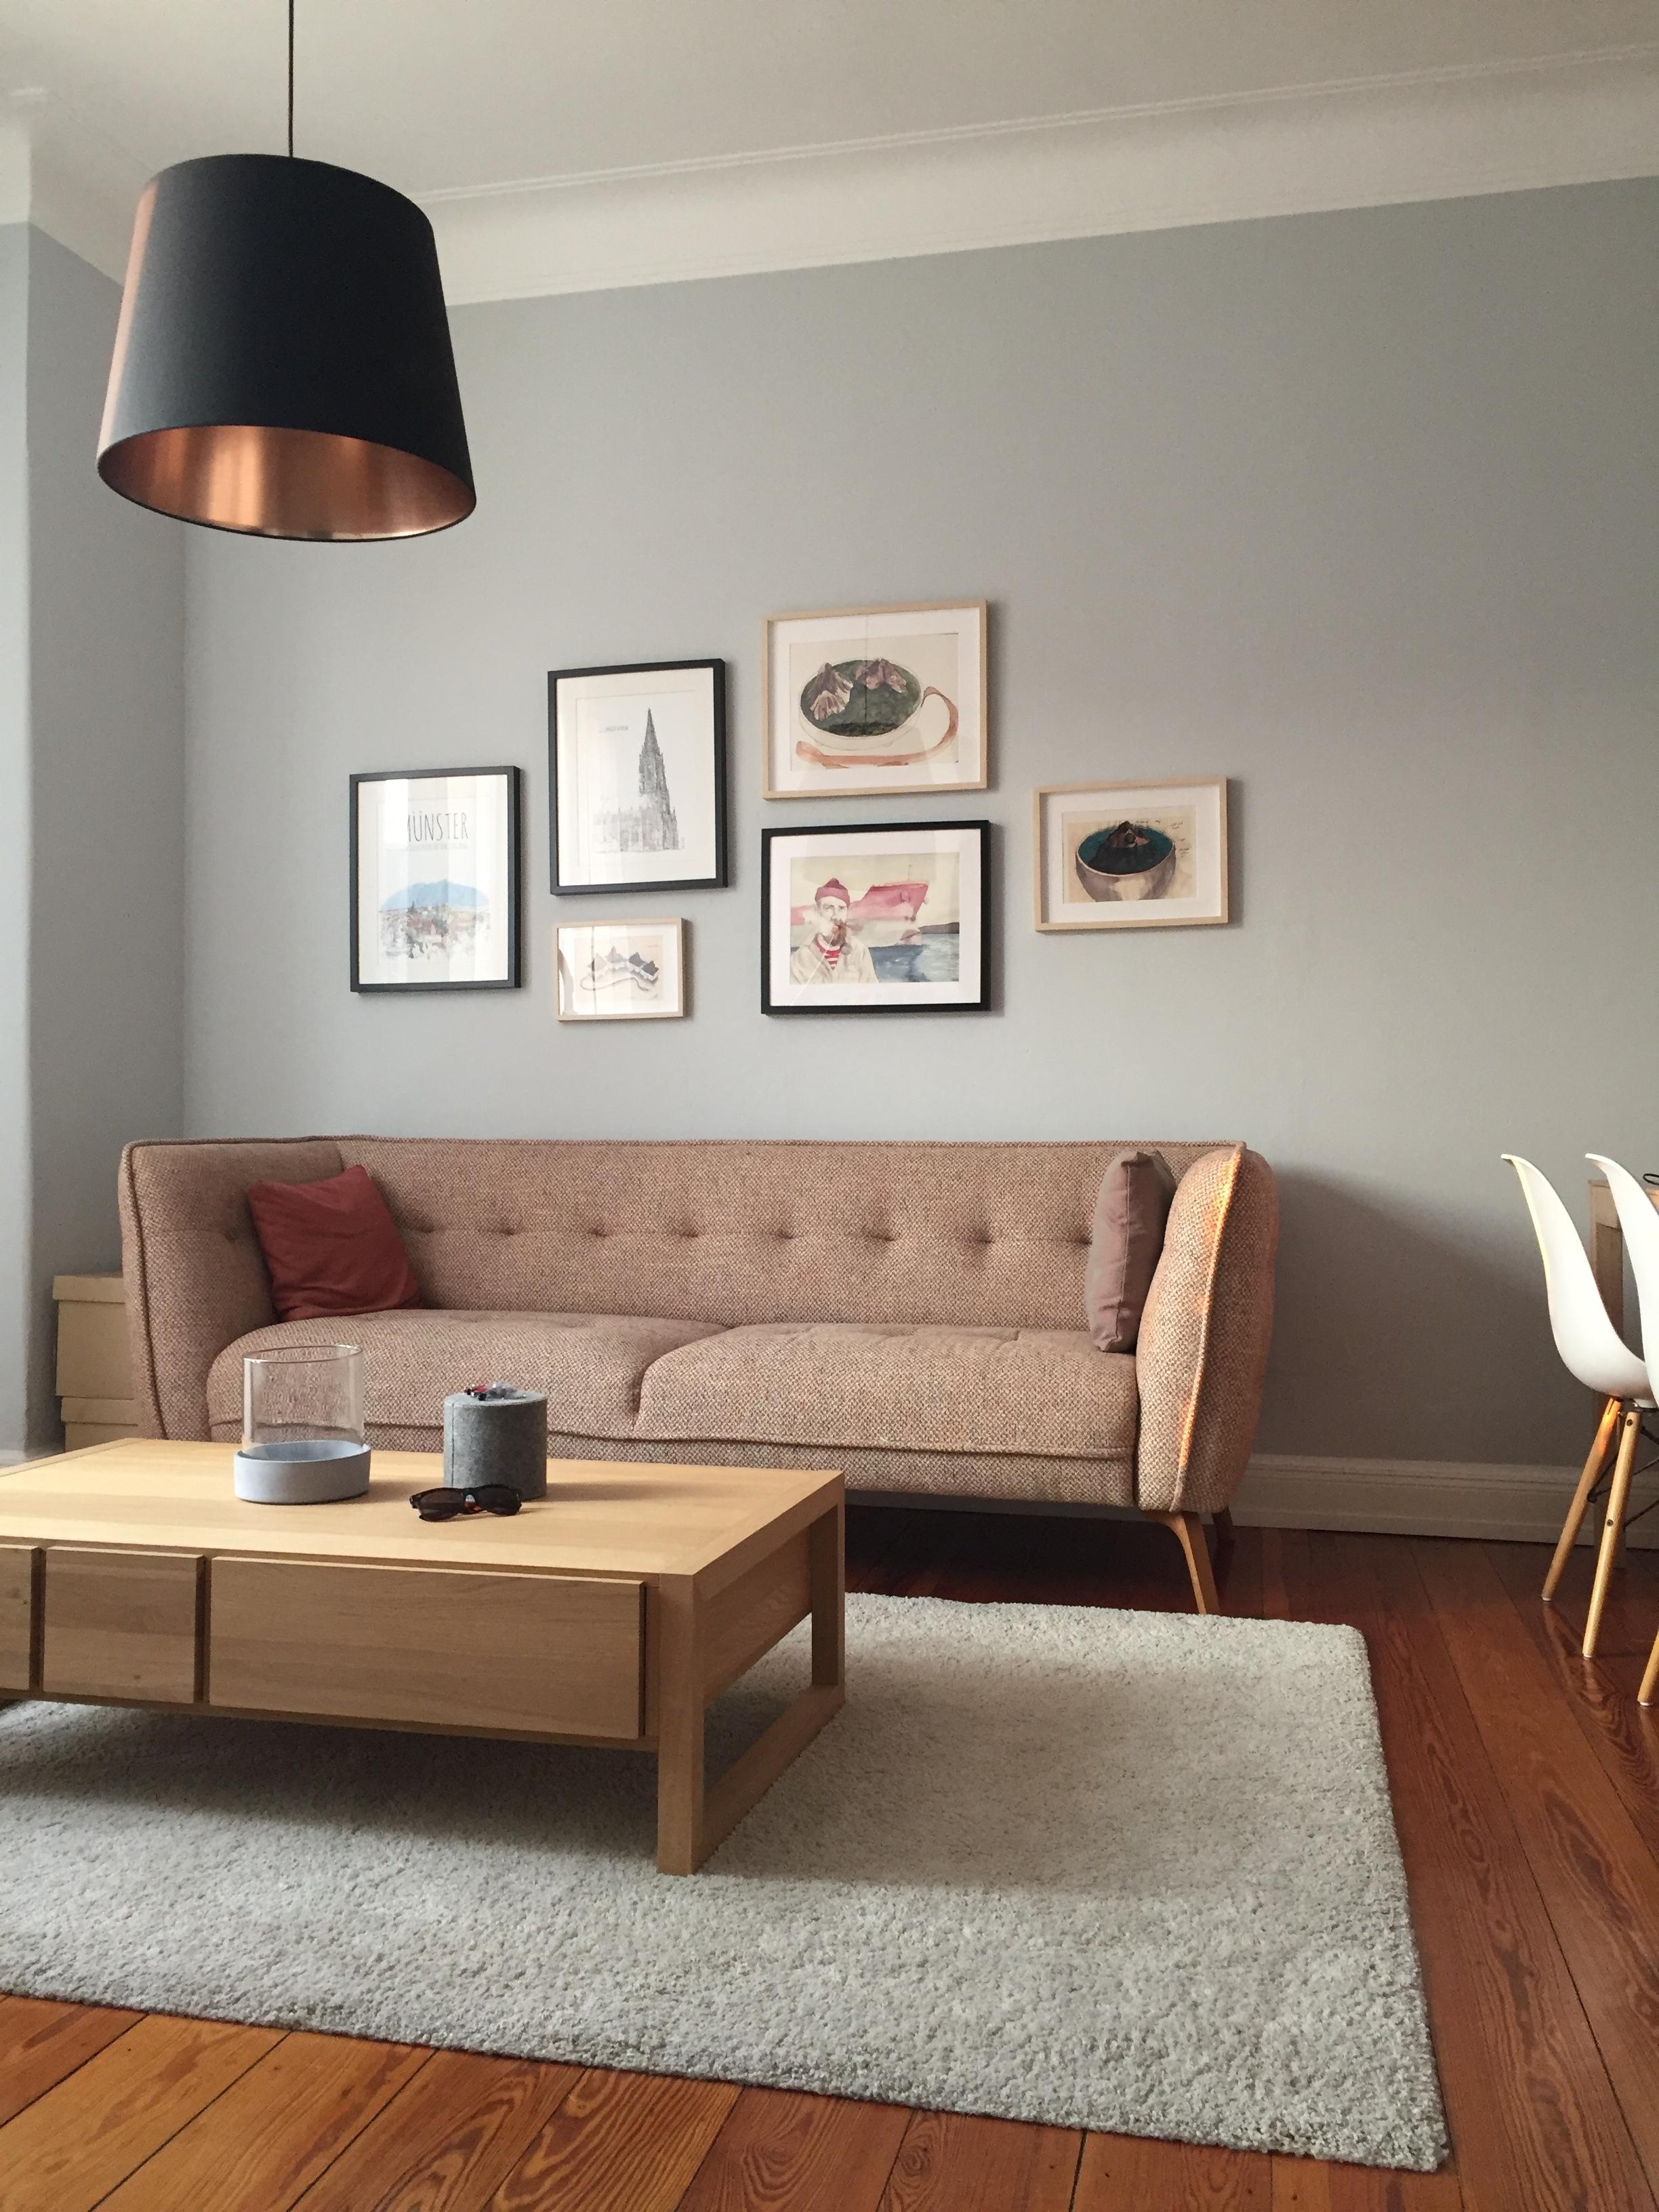 Neue Farbe// #farbgestaltung #wohnzimmer #couch #art #altbau #hamburg #eames #como #dielenboden ##couchtisch #bilder 